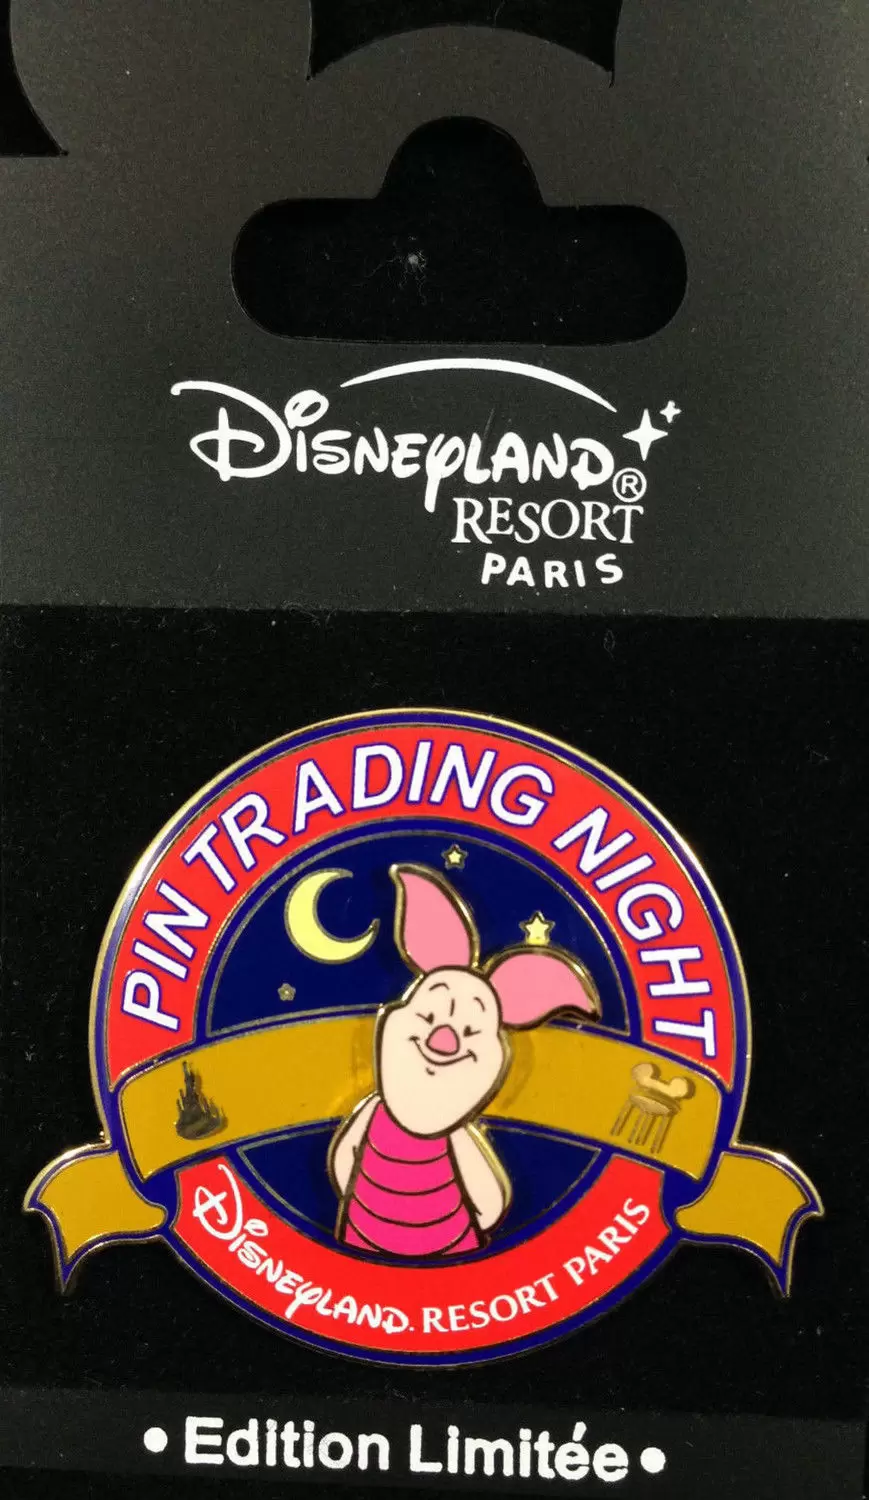 Disney - Pin Trading Night - PIglet